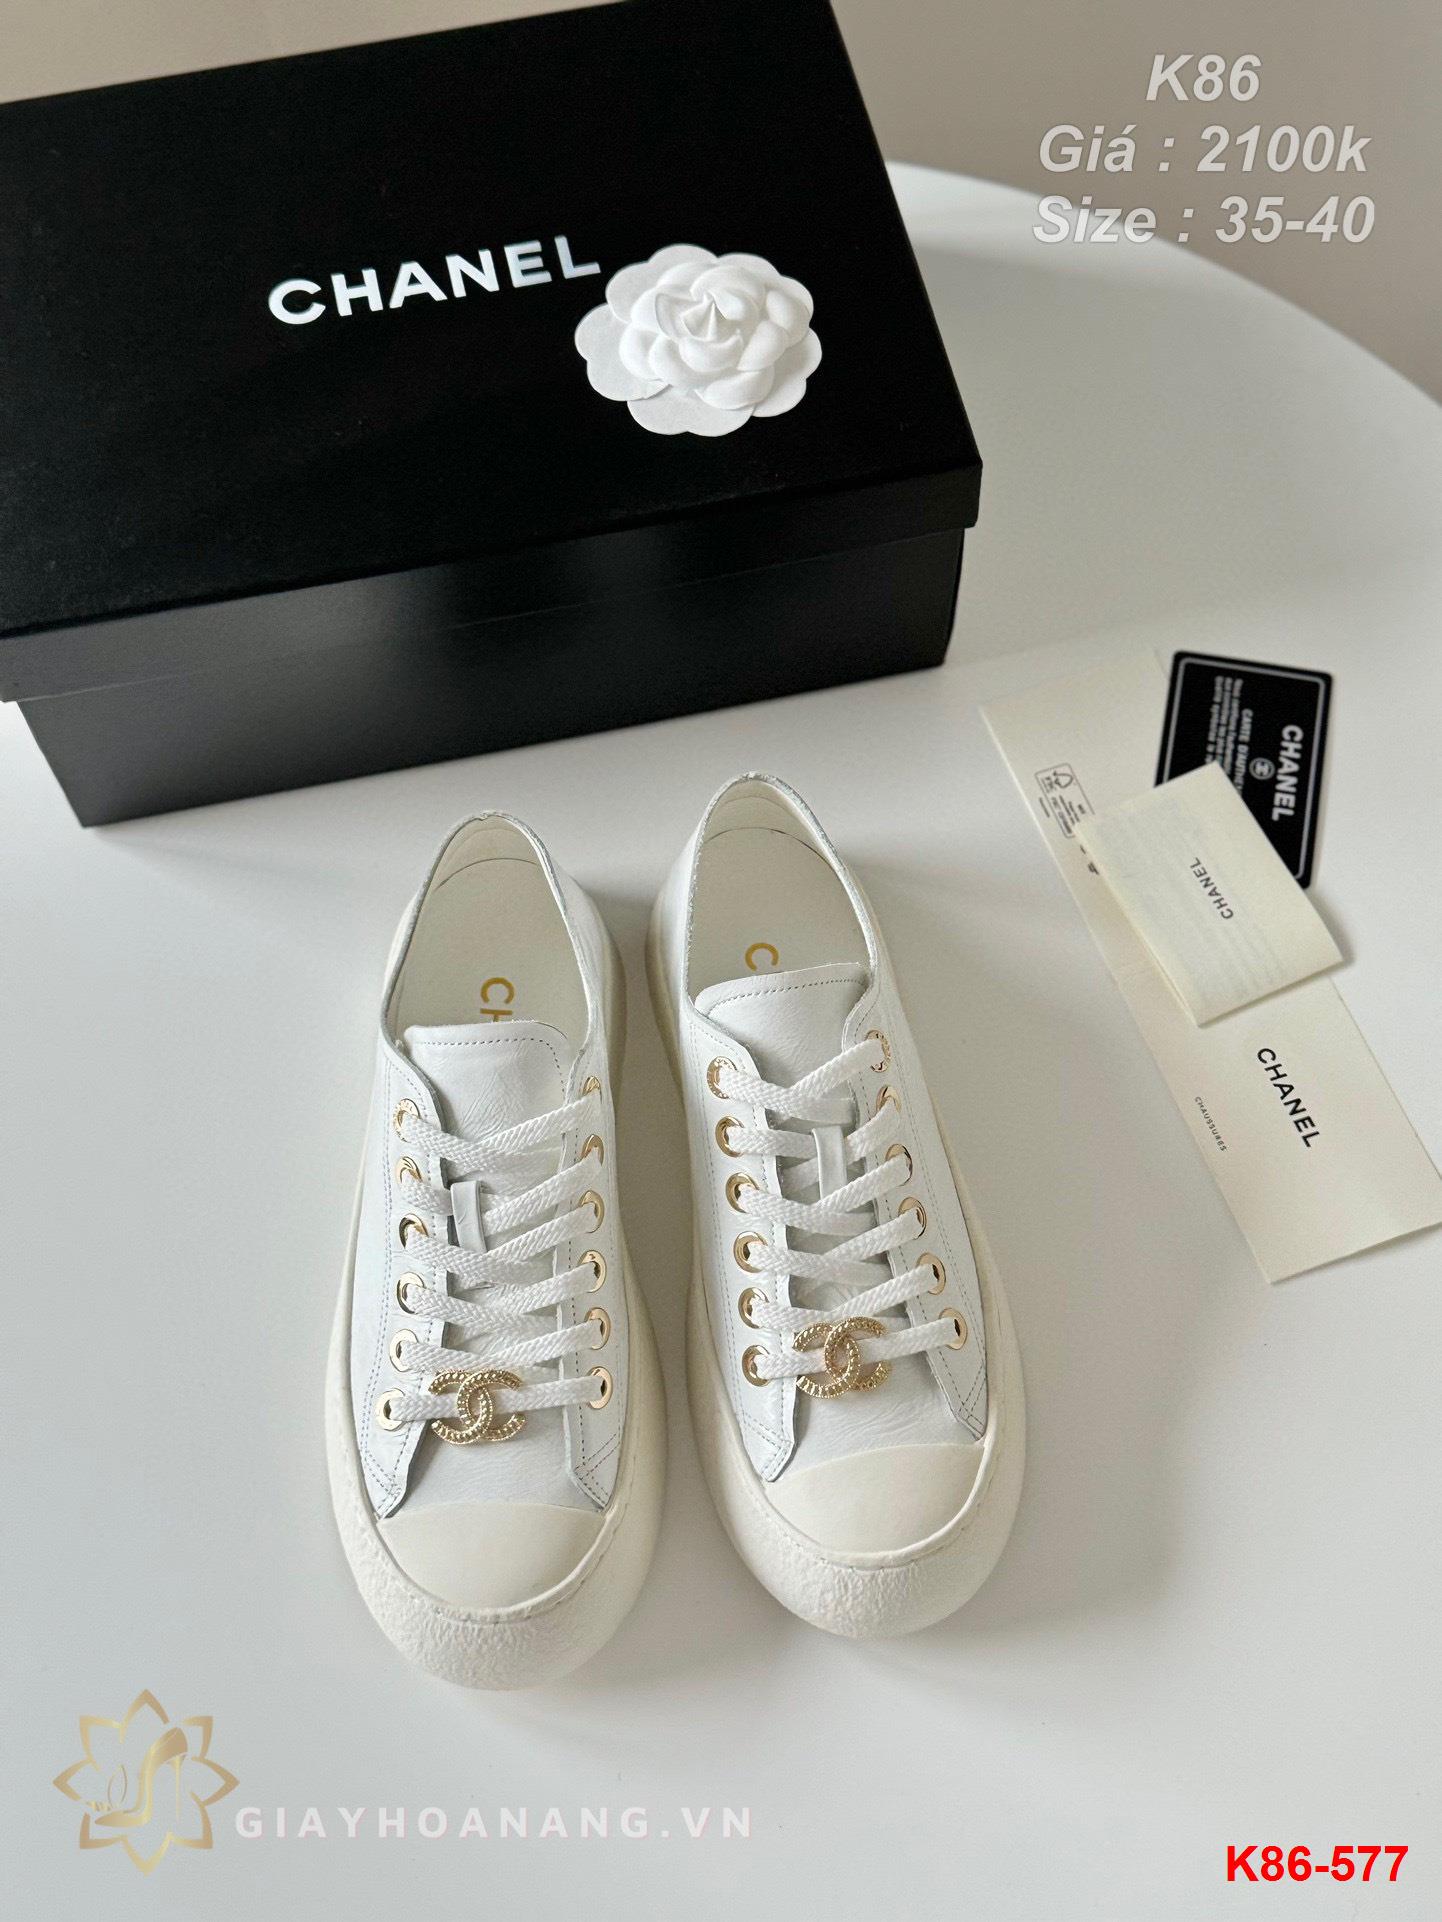 K86-577 Chanel giày thể thao siêu cấp